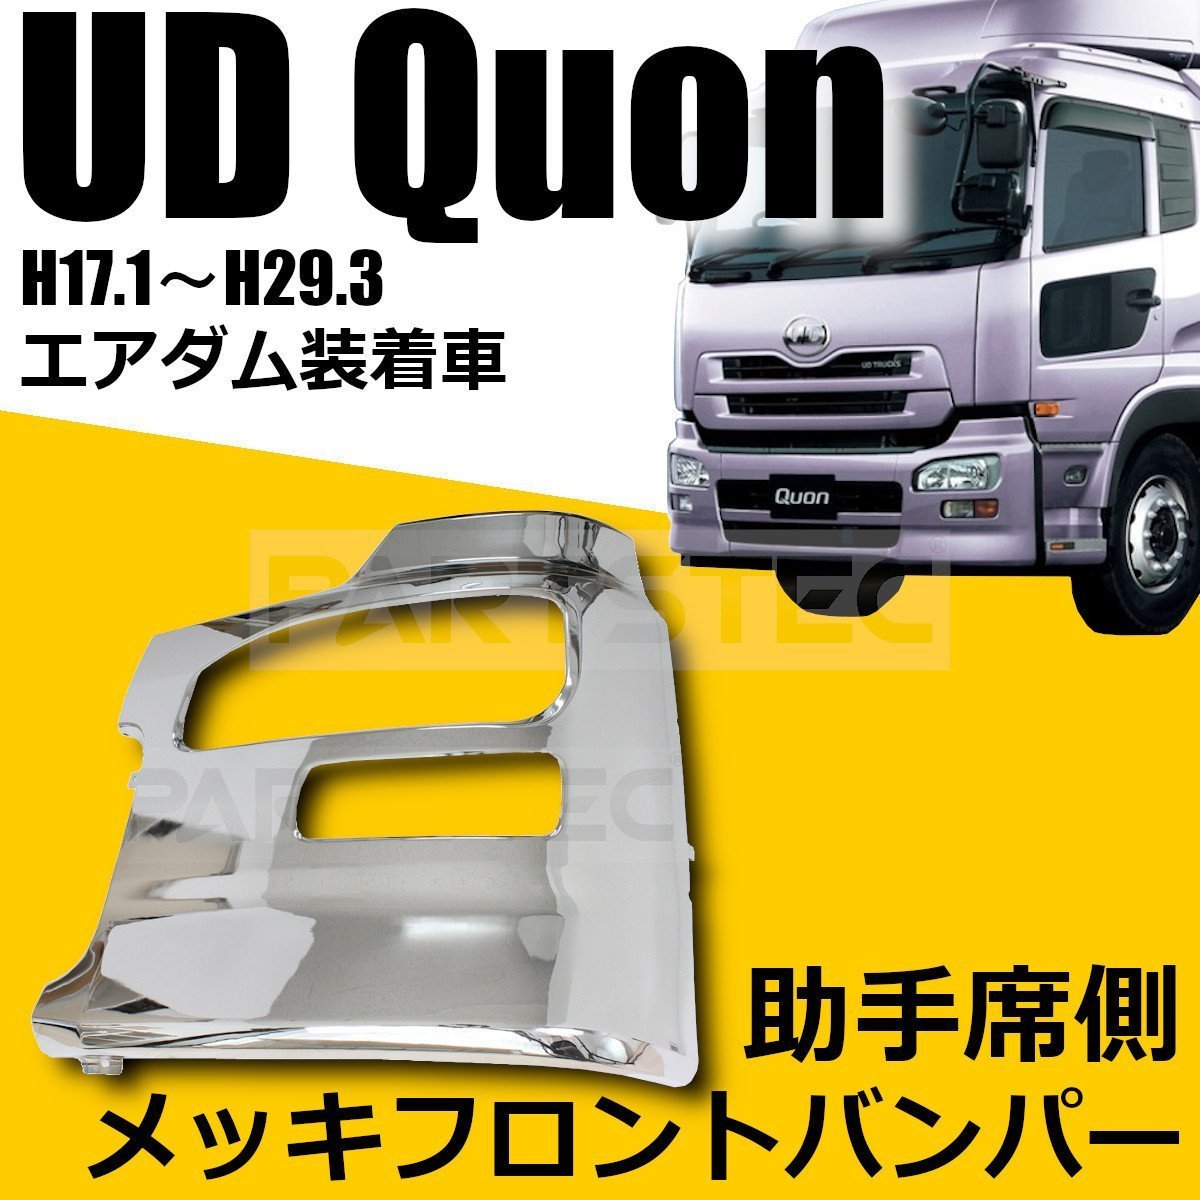 オープニング大放出セール日産UD クオン メッキ コーナーパネル 交換タイプ H17.1?H29.3 トラック用品、パーツ 